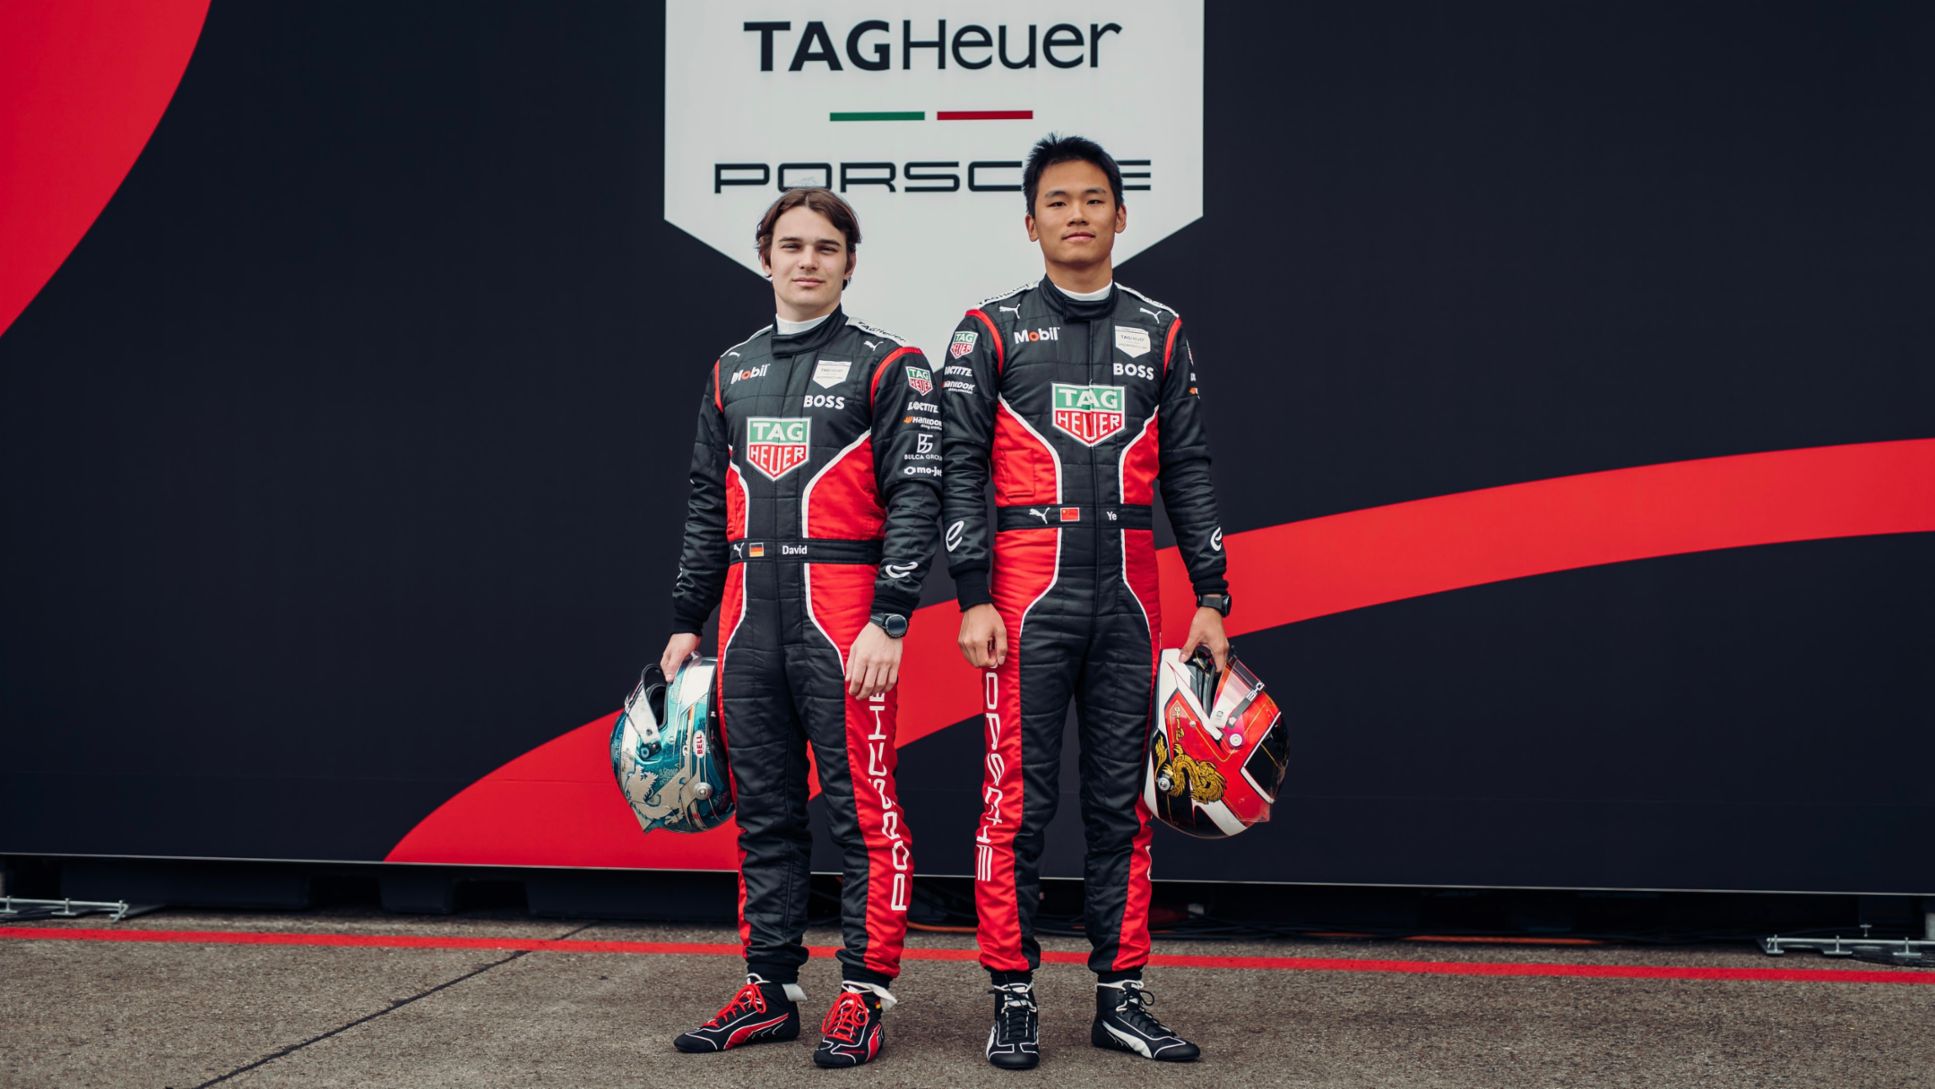 David Beckmann, piloto de pruebas y reserva del equipo TAG Heuer Porsche de Fórmula E; Yifei Ye, piloto de Porsche Motorsport Asia Pacífico (i-d), 2023, Porsche AG